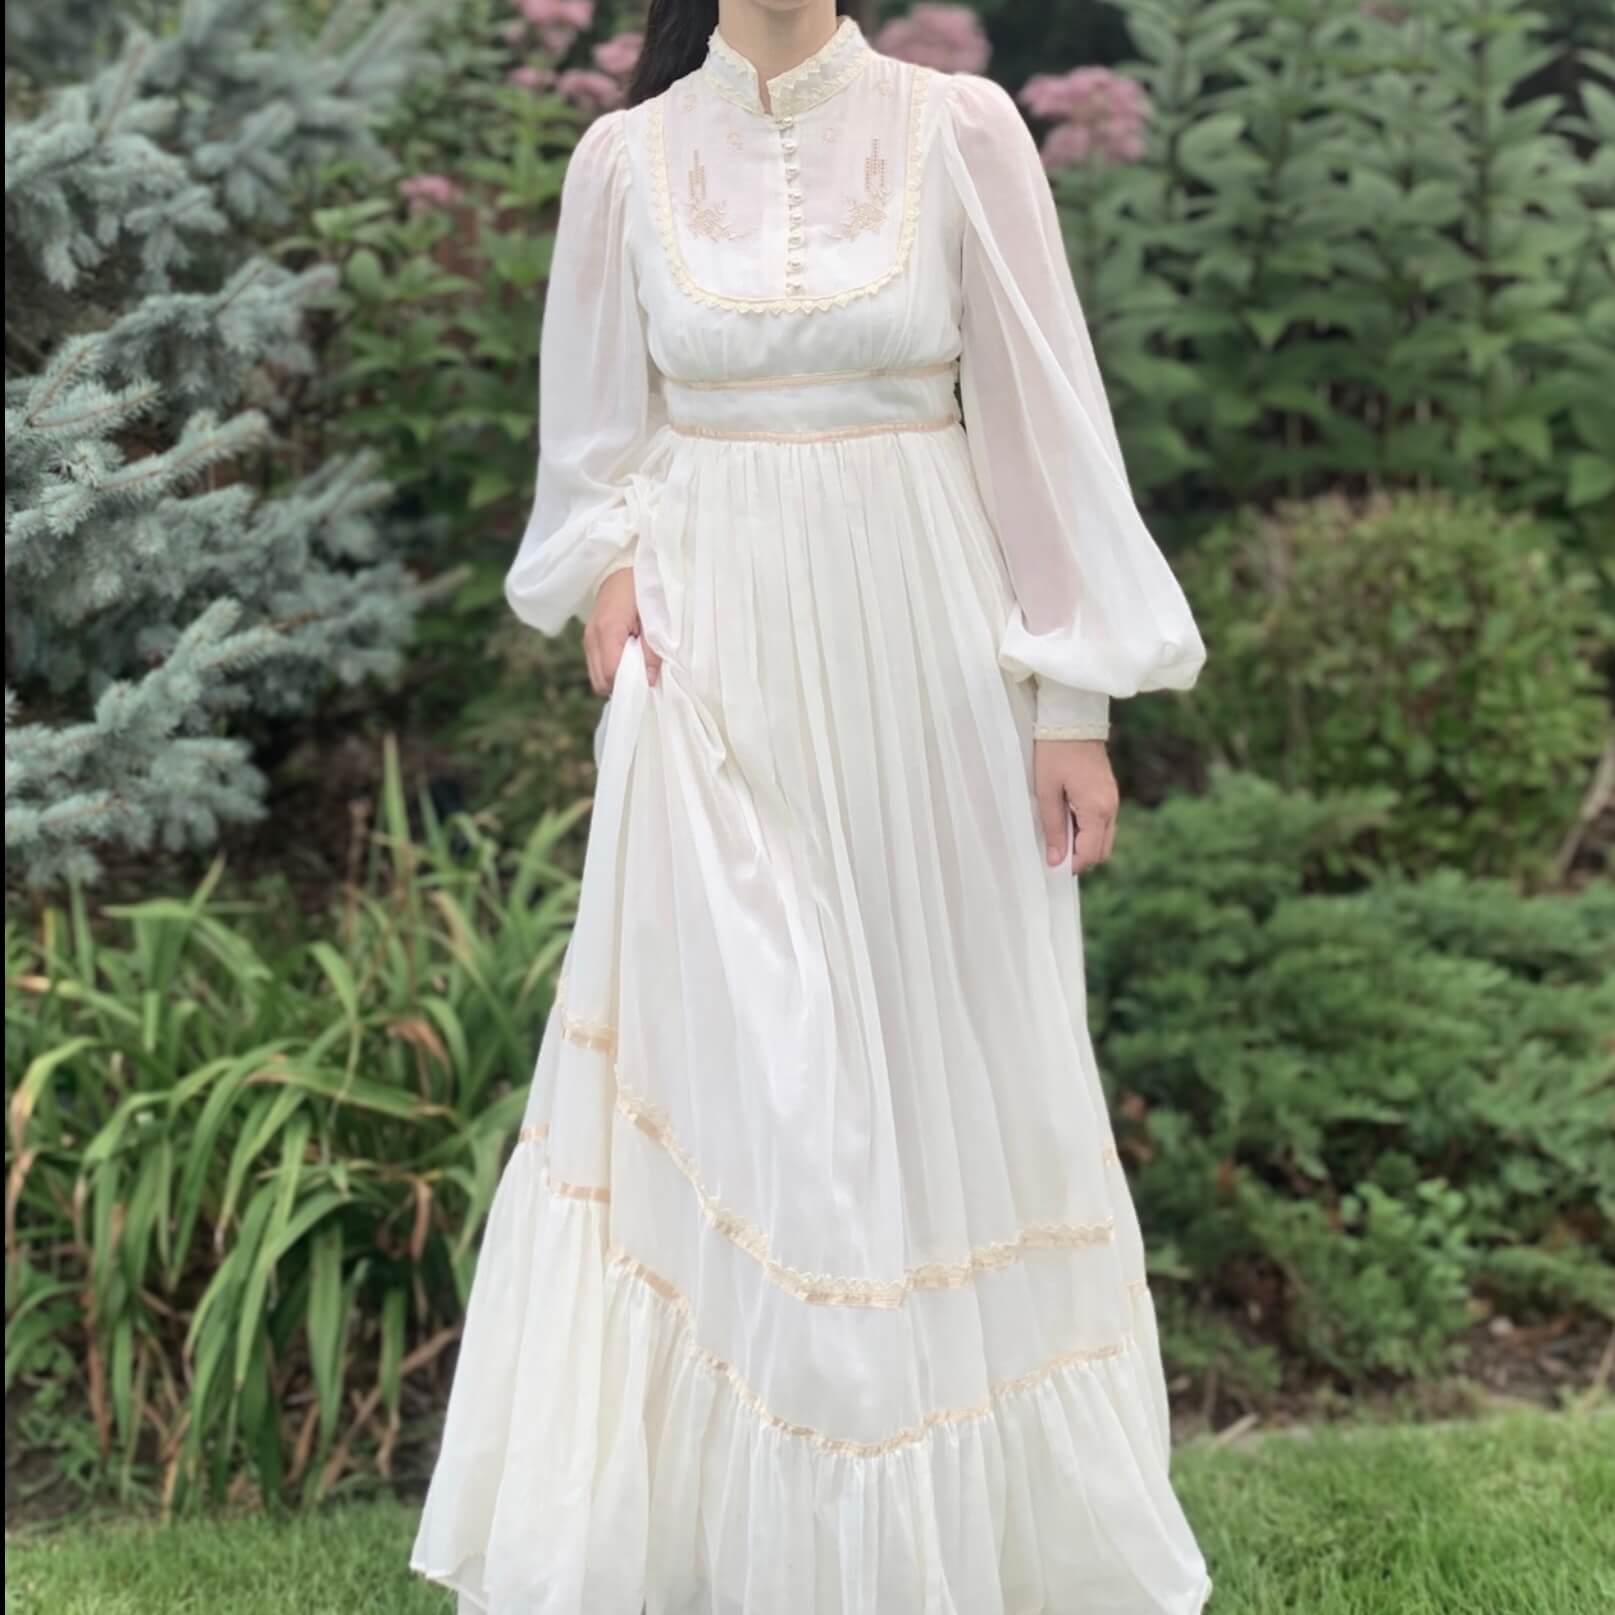 model wearing a Gunne Sax wedding dress in front of trees